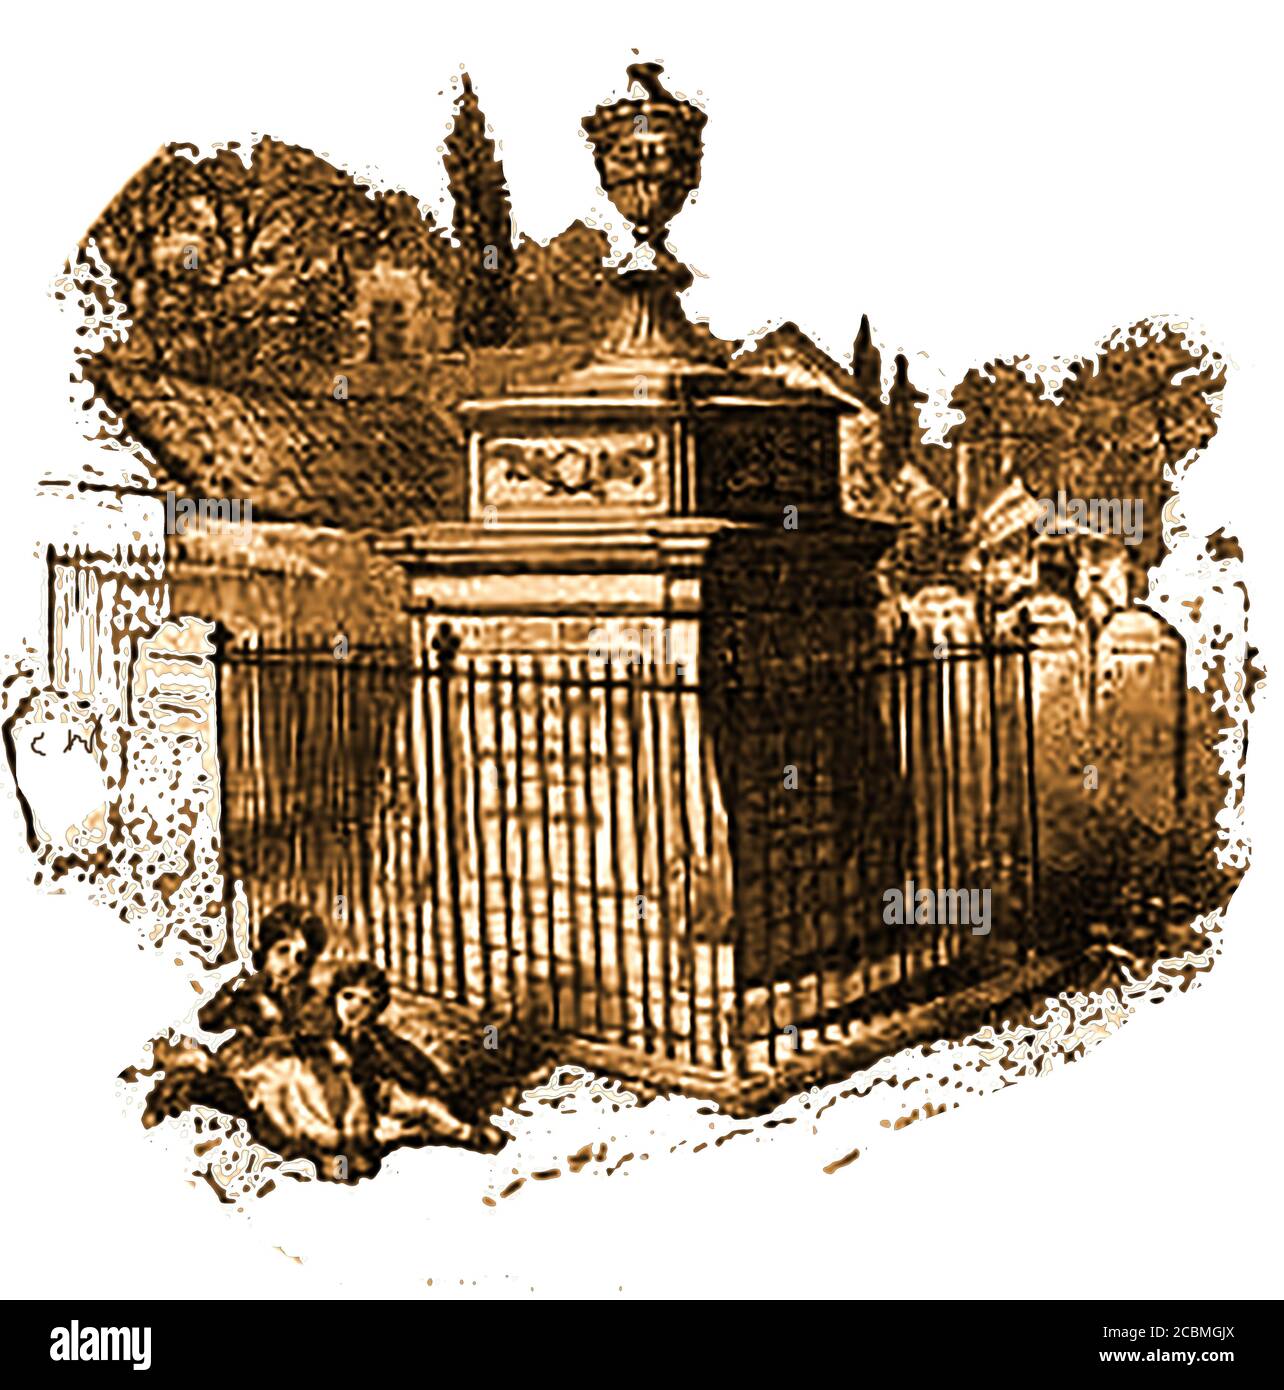 William Hogarth - la sua tomba nel cimitero di Chiswick (San Nicola) come era nel 1852. Hogarth morì il 25 ottobre 1764, all'età di 66 anni, e fu restaurata nel 2010 e comprende una targa con un epitaffio a Hogarth composto dal suo amico David Garrick. Hogarth era un artista, incisore, cartoonista e stampatore molto apprezzato per le sue opere satiriche. Era patrono di molte associazioni di beneficenza e lui e sua moglie hanno favorito i bambini fondanti, essendo patroni del Foundling Hospital di Londra. La coppia non aveva figli propri. Foto Stock